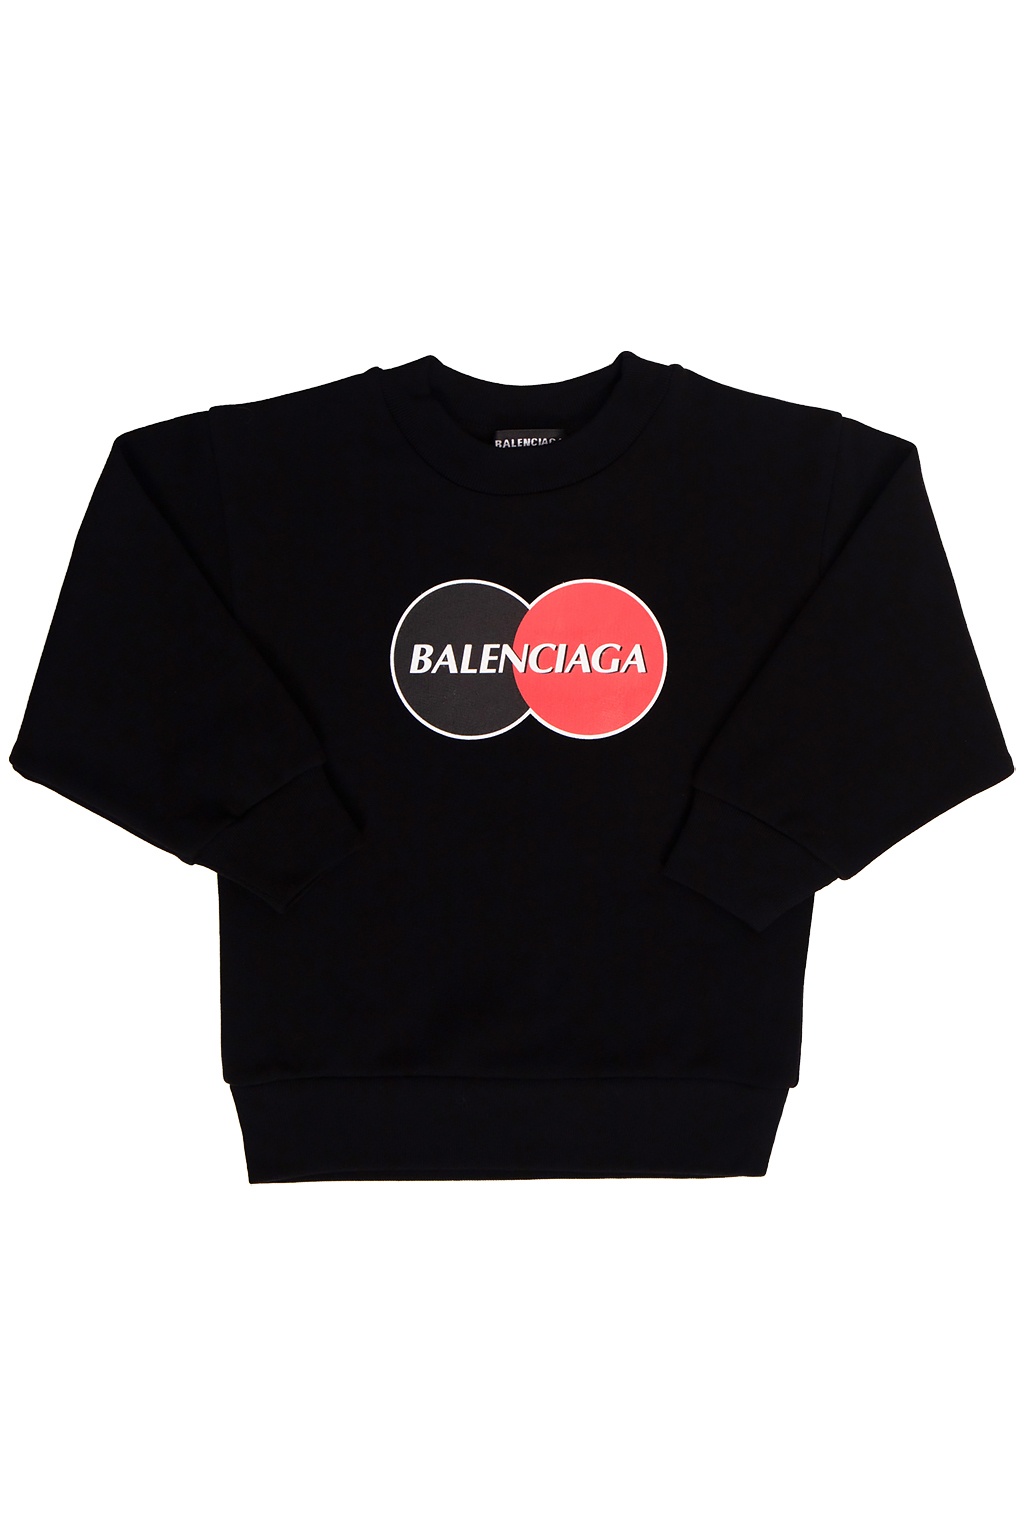 balenciaga new logo sweatshirt